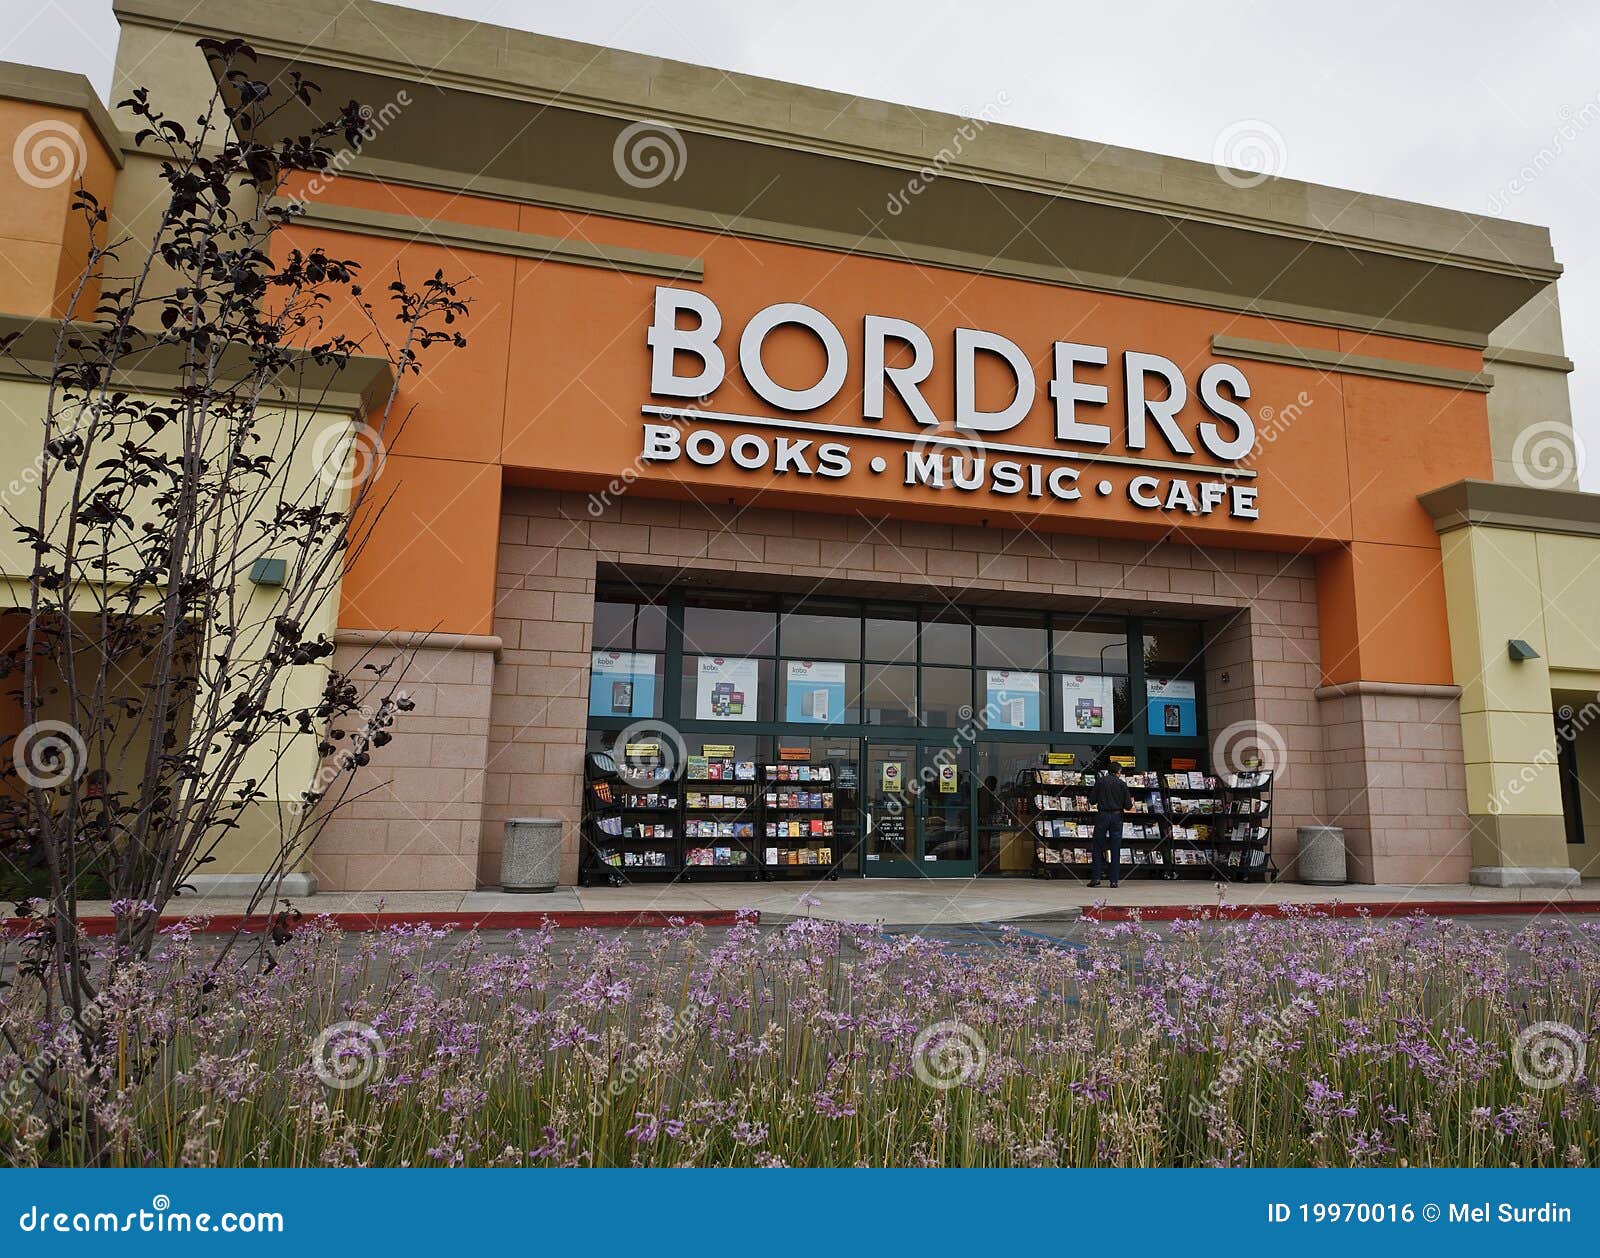 borders books rockville